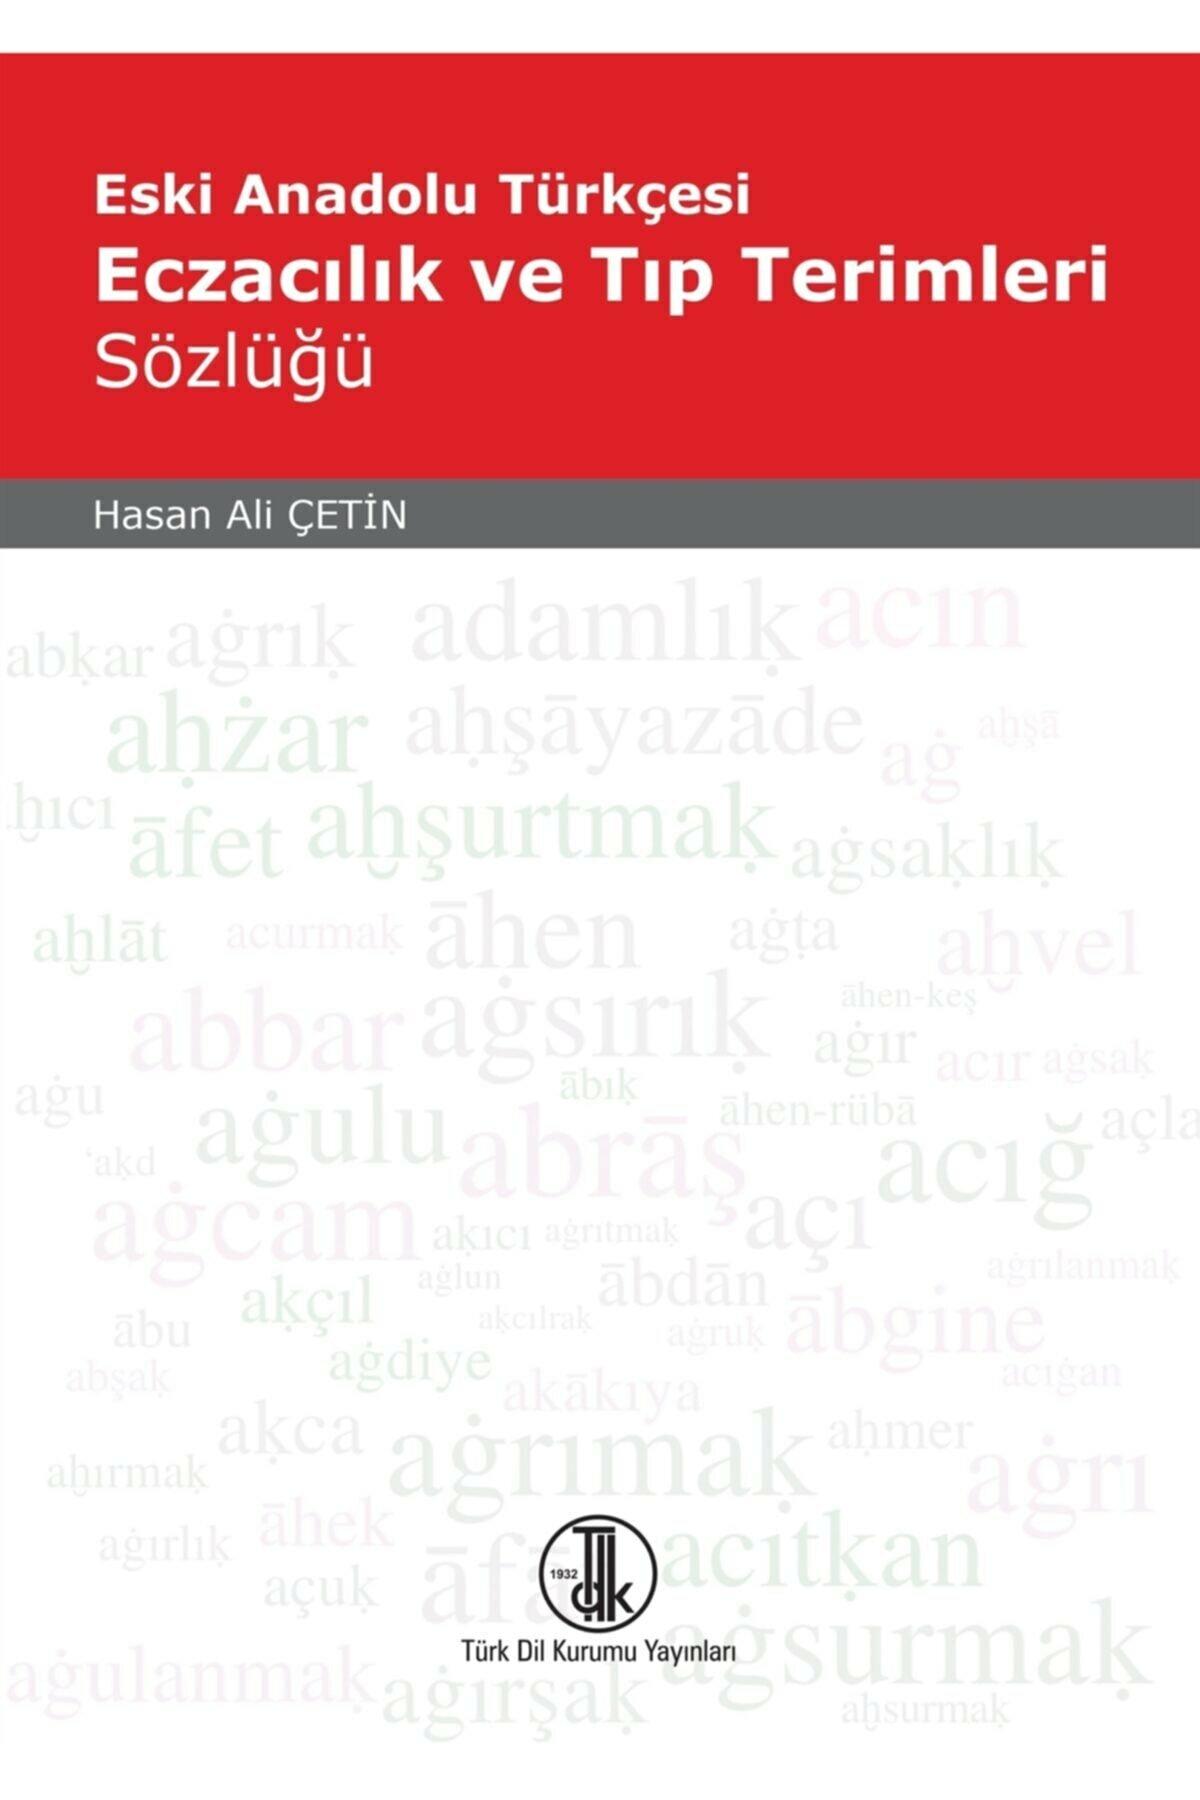 Eski Anadolu Türkçesi Eczacılık ve Tıp Terimleri Sözlüğü